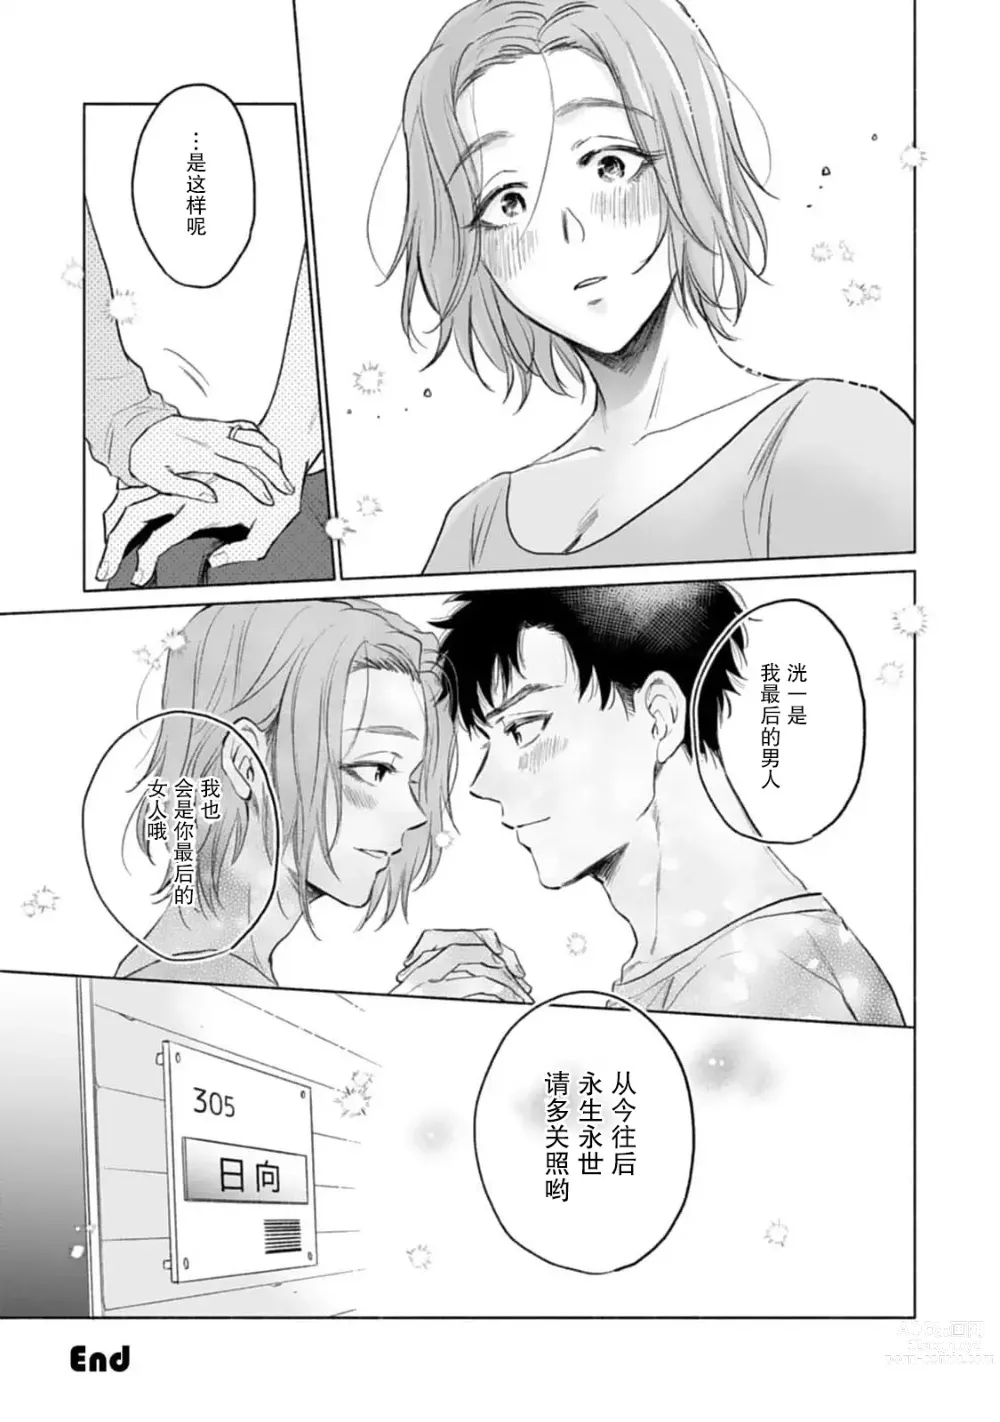 Page 36 of manga 月子小姐想要在涩涩时对年下丈夫使坏